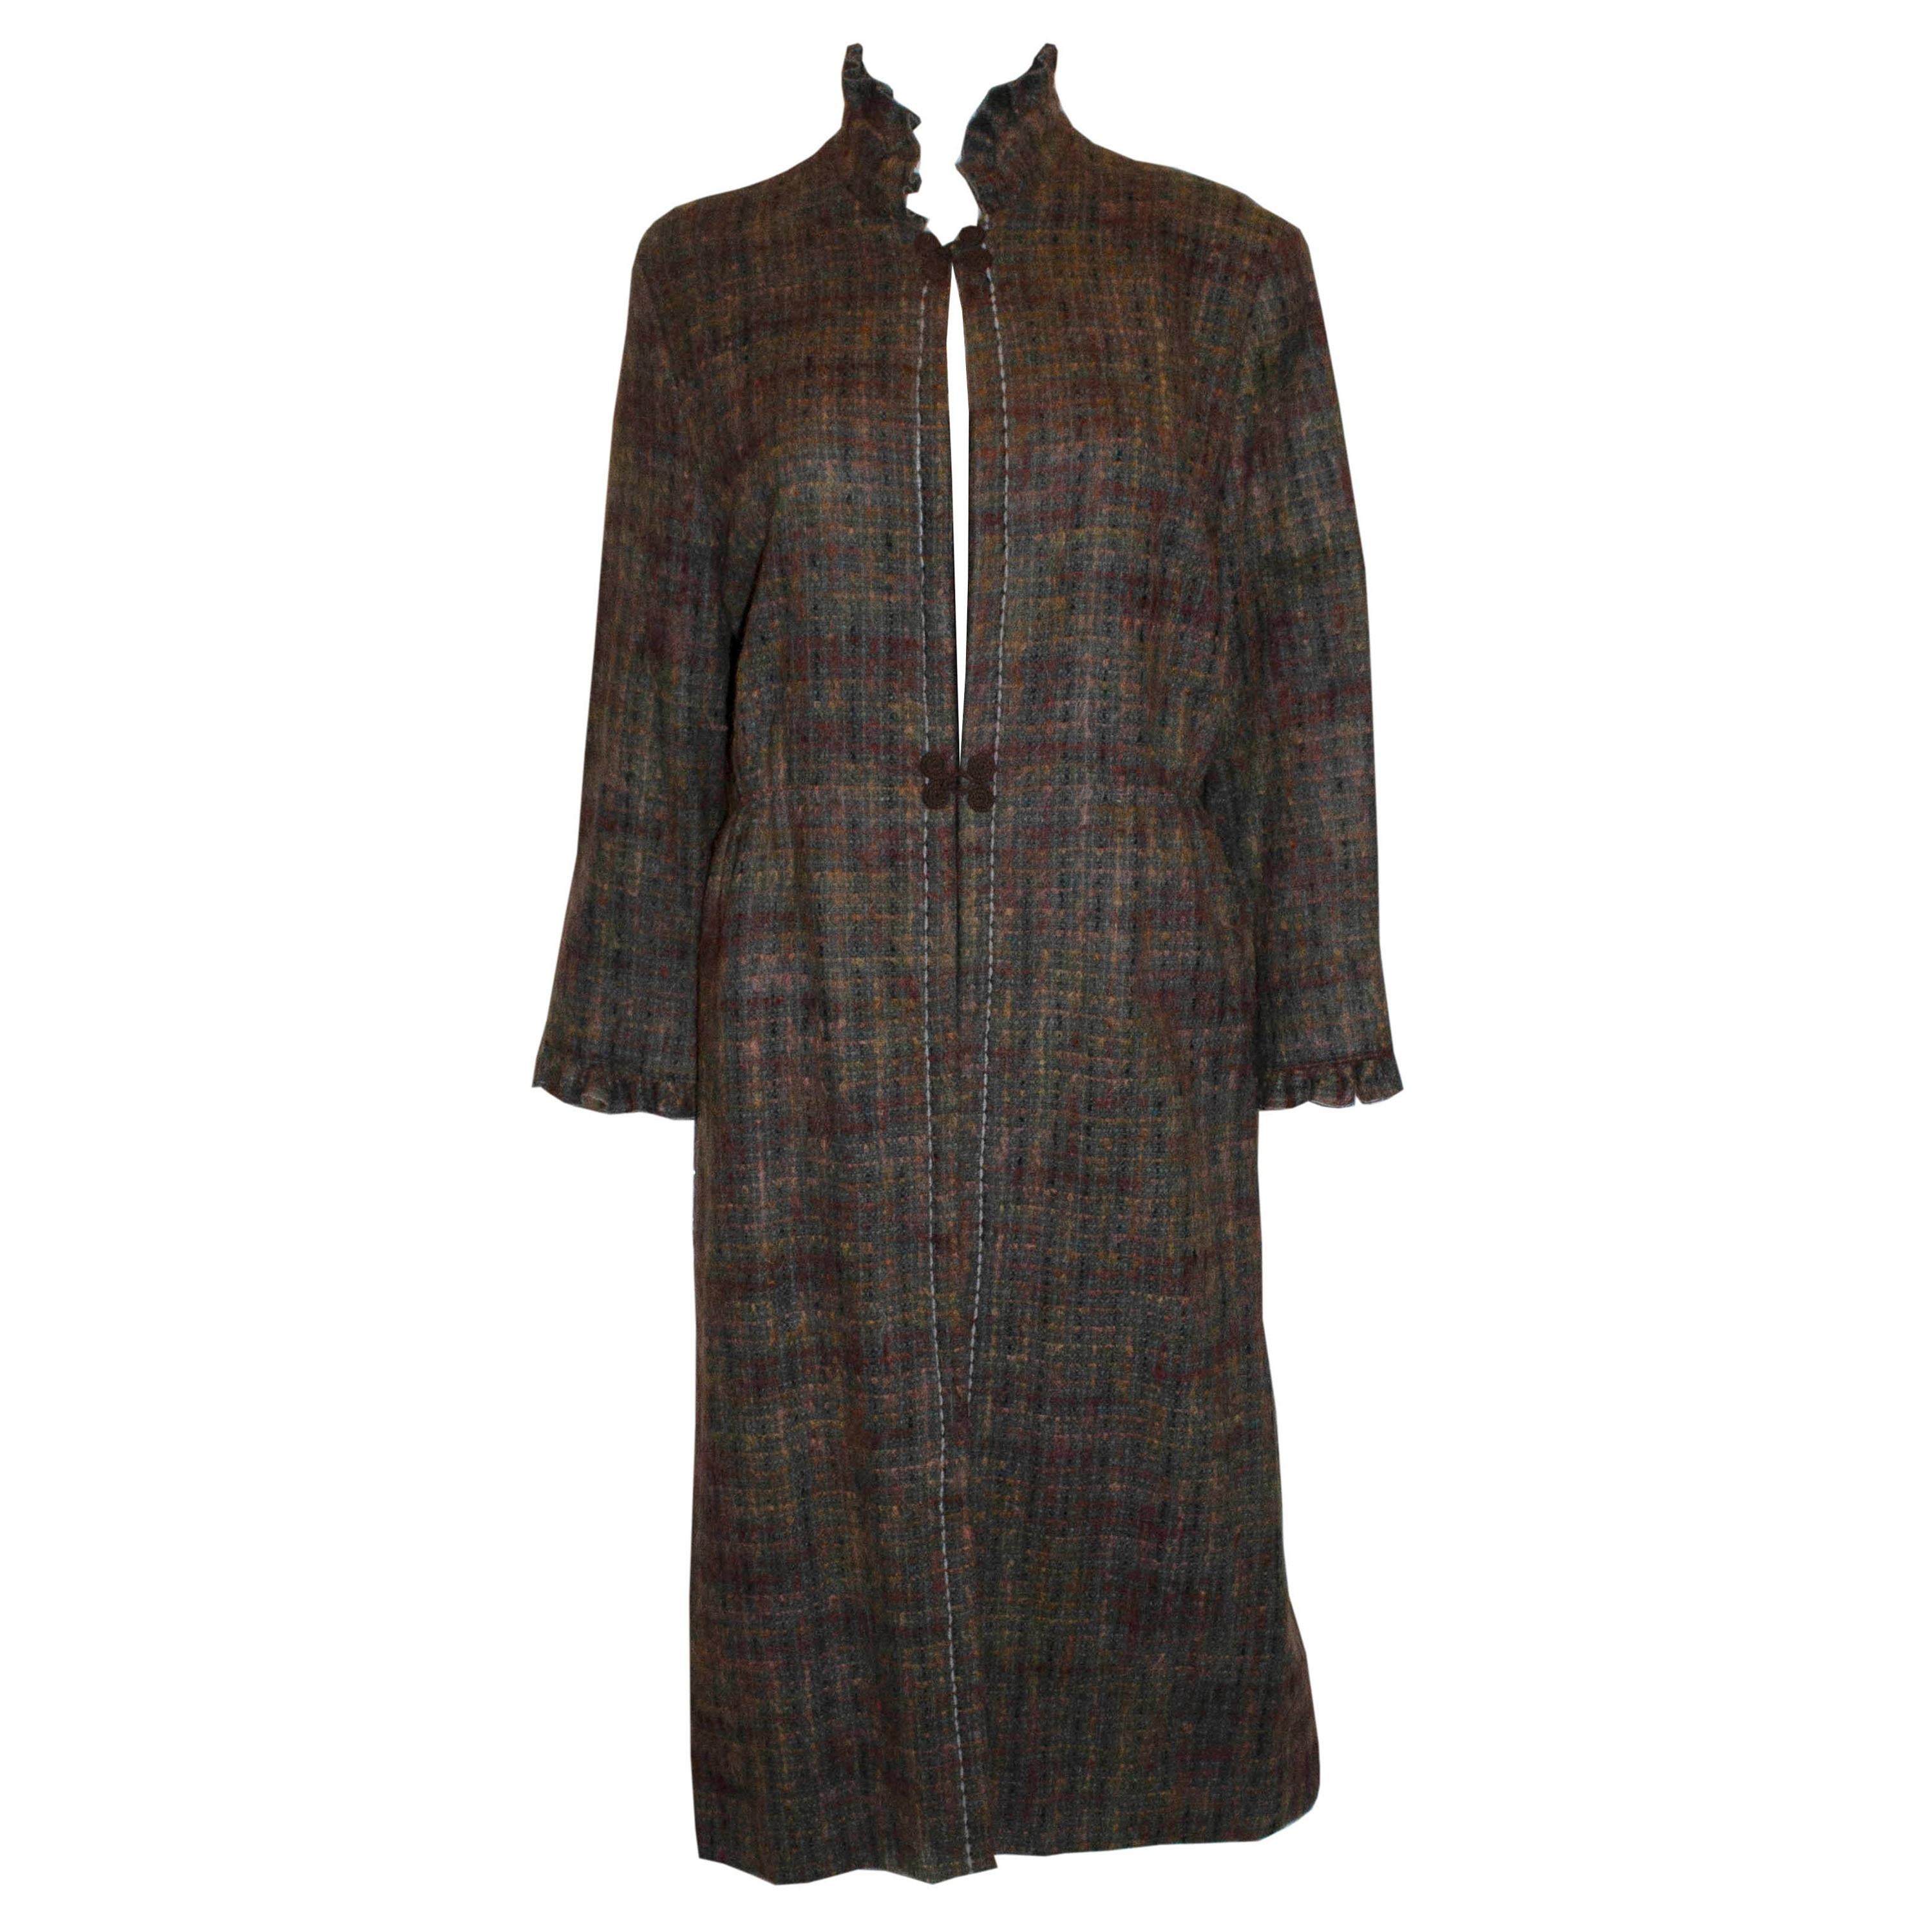 Mohair Coats    For Sale on 1stDibs   mohair coats on sale